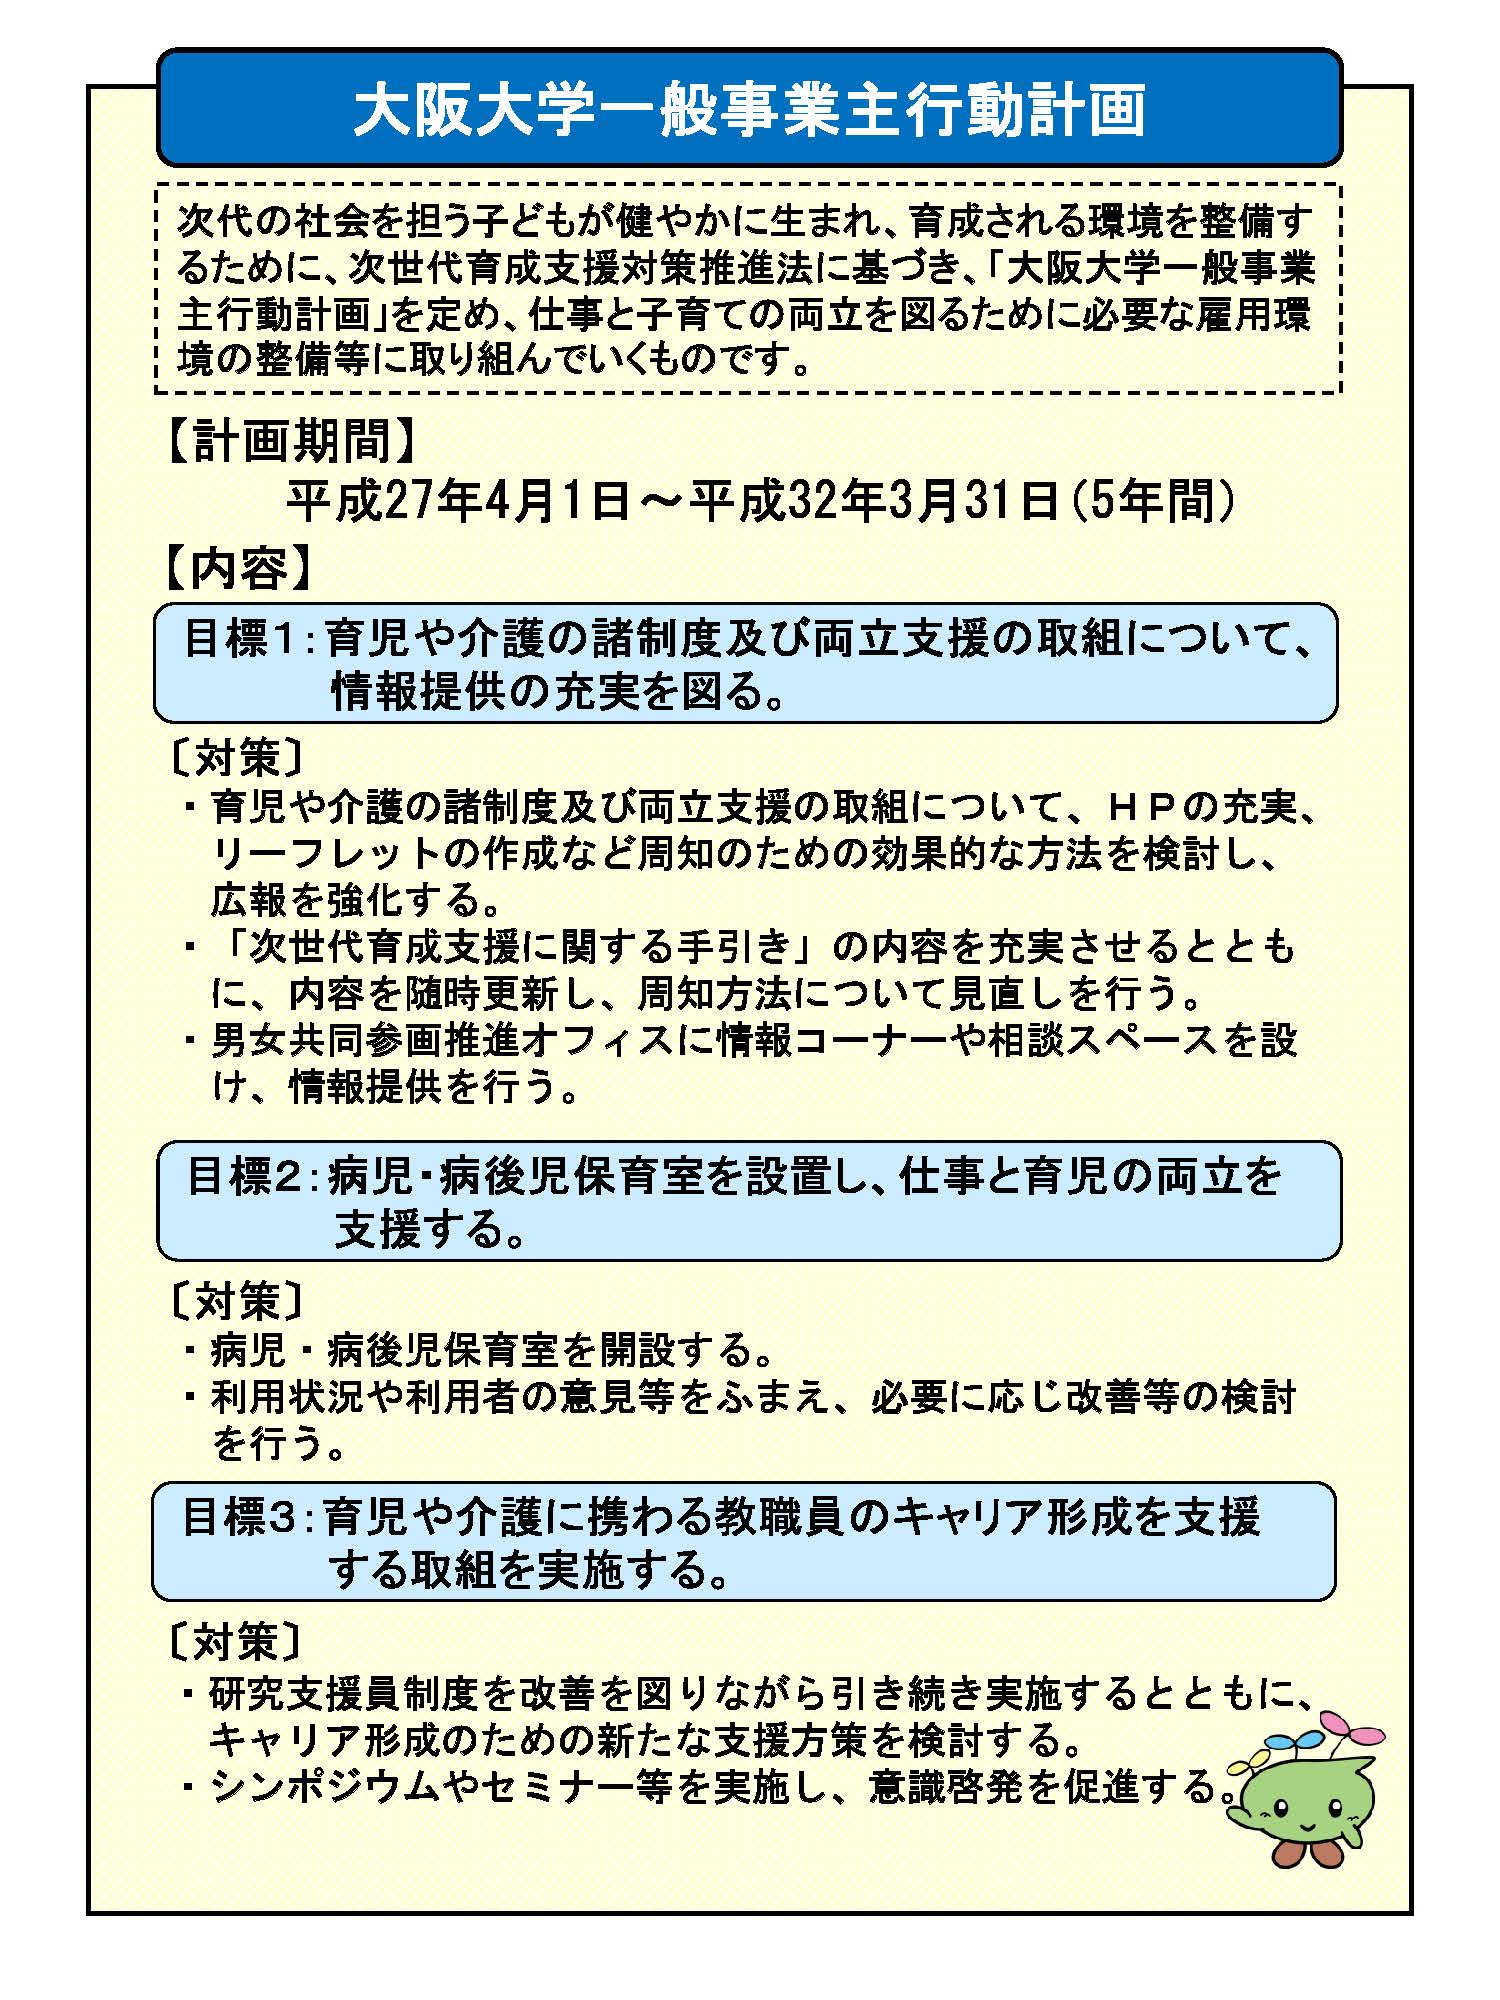 大阪大学一般事業主行動計画（第3期）を策定しました